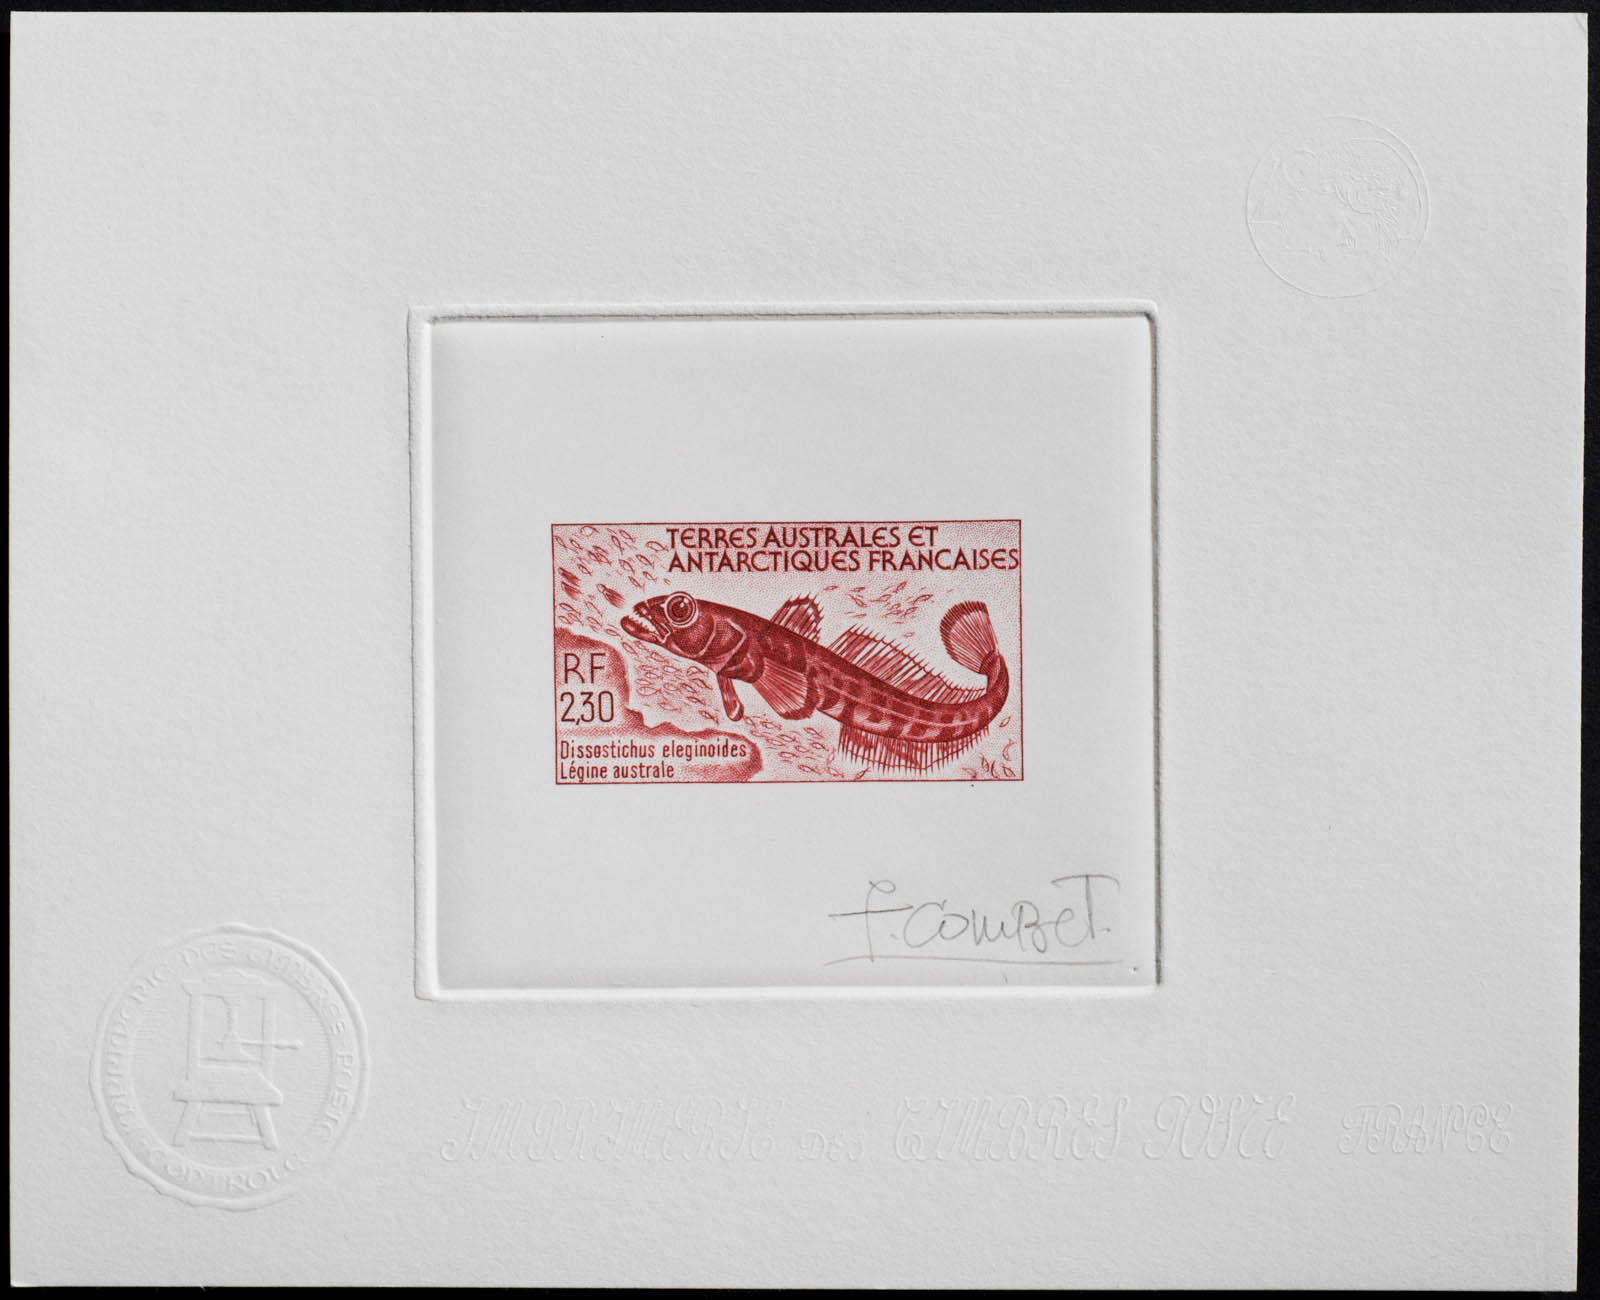 French Antarctic Dissostichus Eleginoides Stamp Artist's Proof